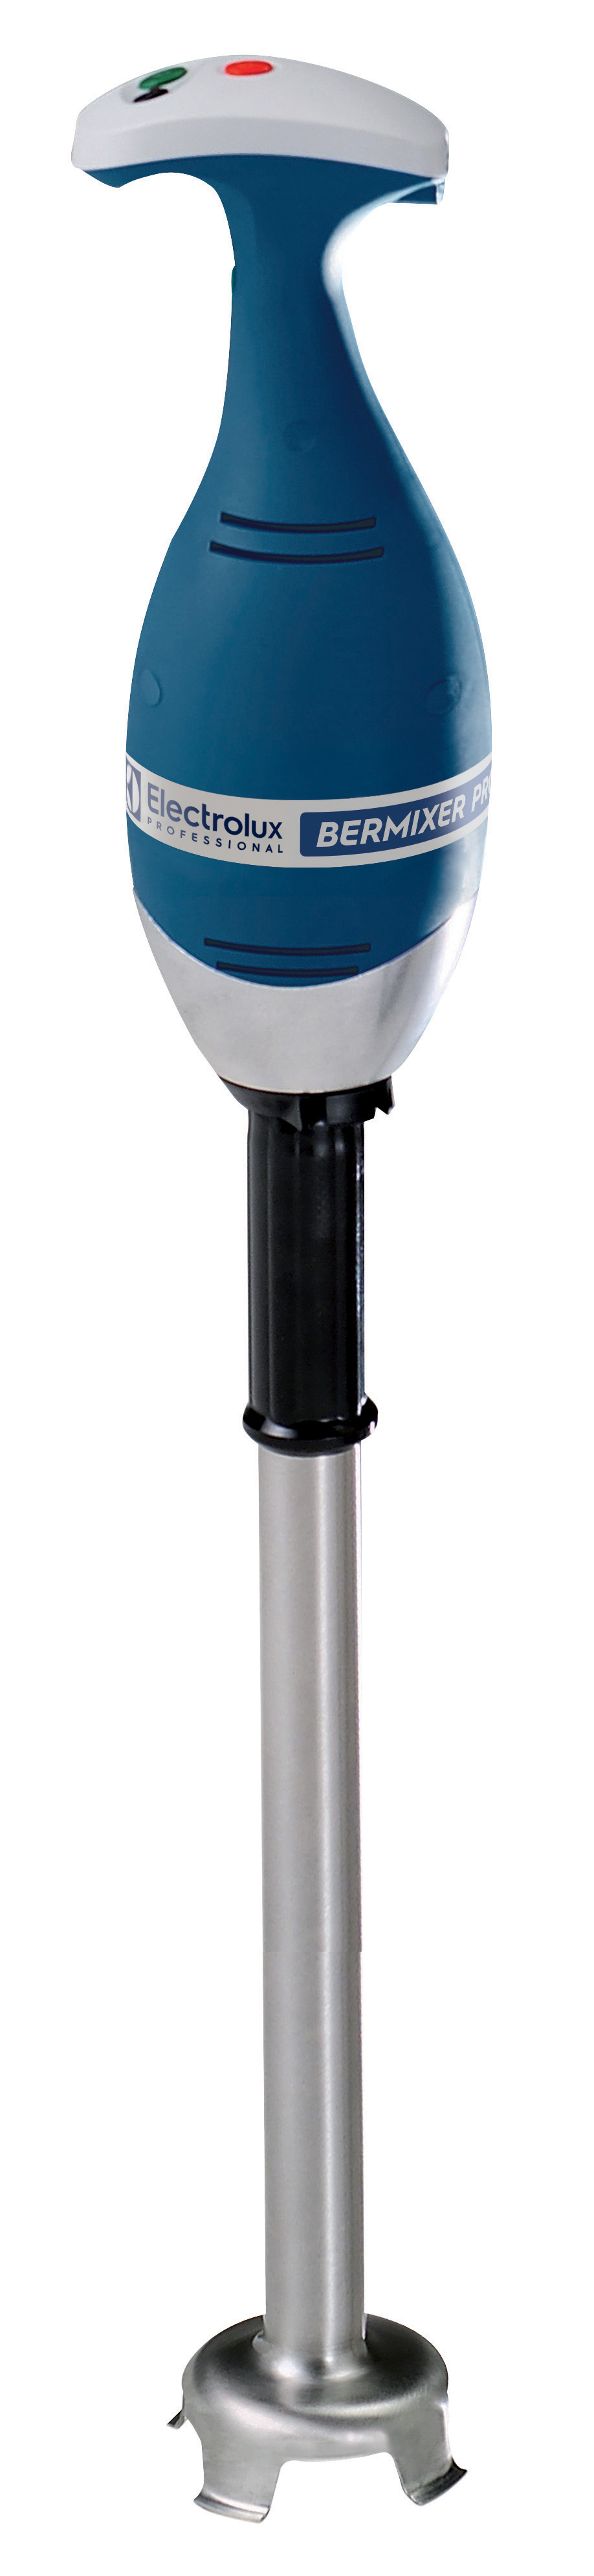 Palični mešalnik Electrolux professional - tuba 653 mm